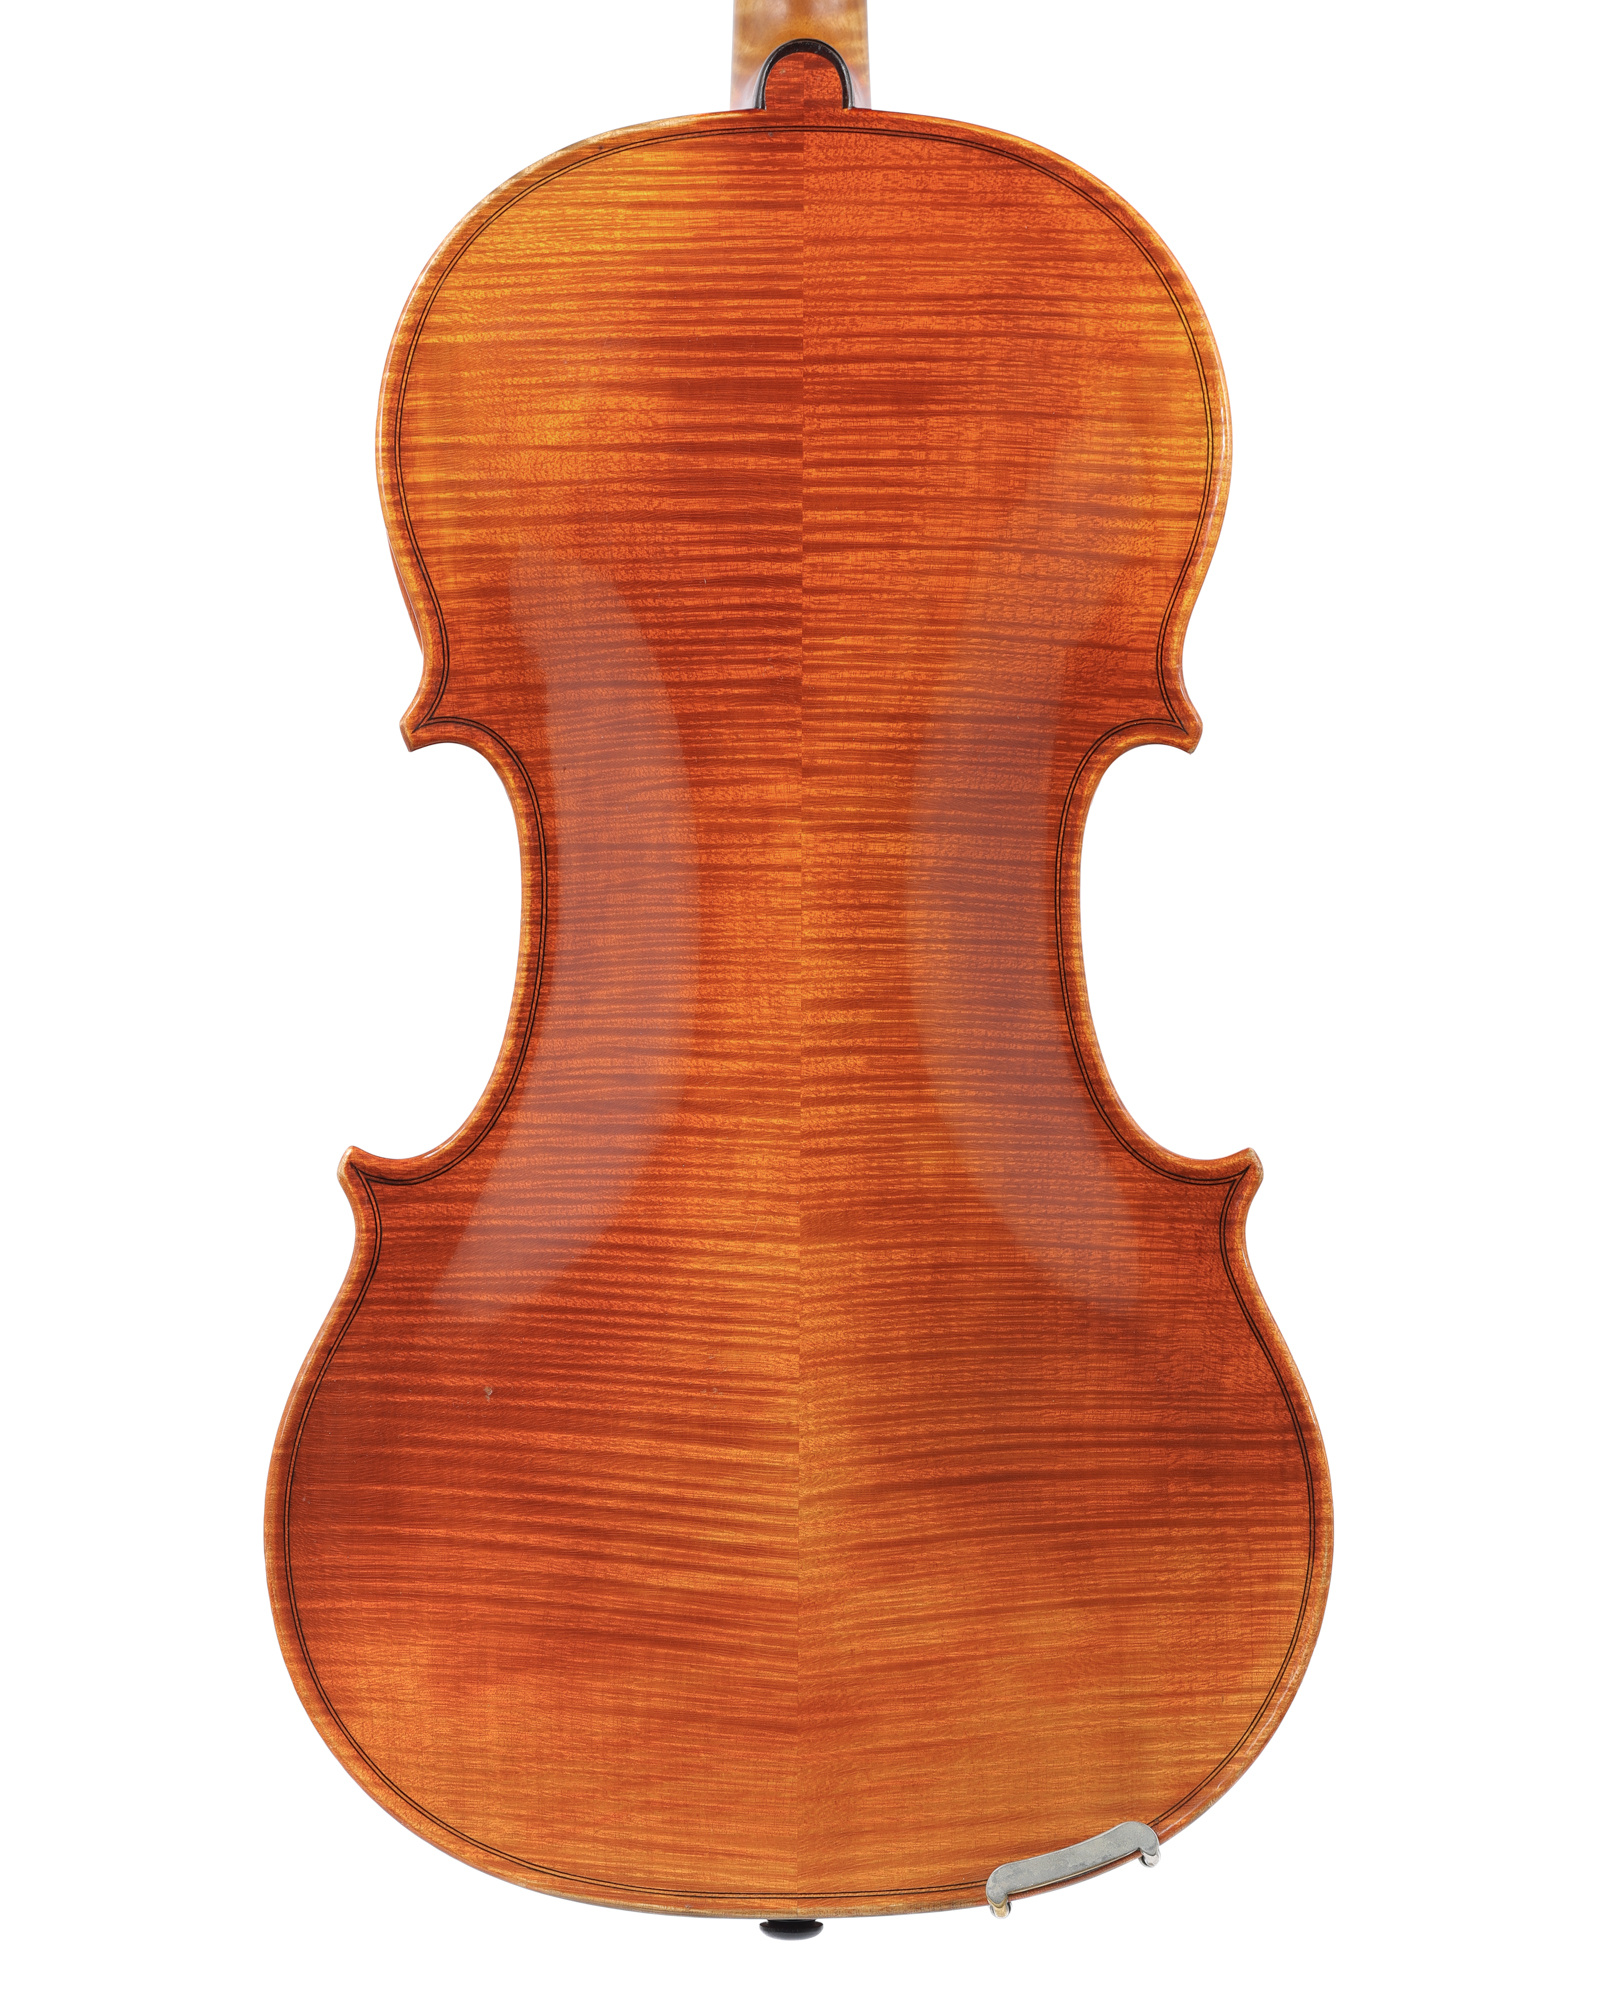 Roman Teller viola, 17", model no. 215,  1971, Eltersdorf, GERMANY, fine condition